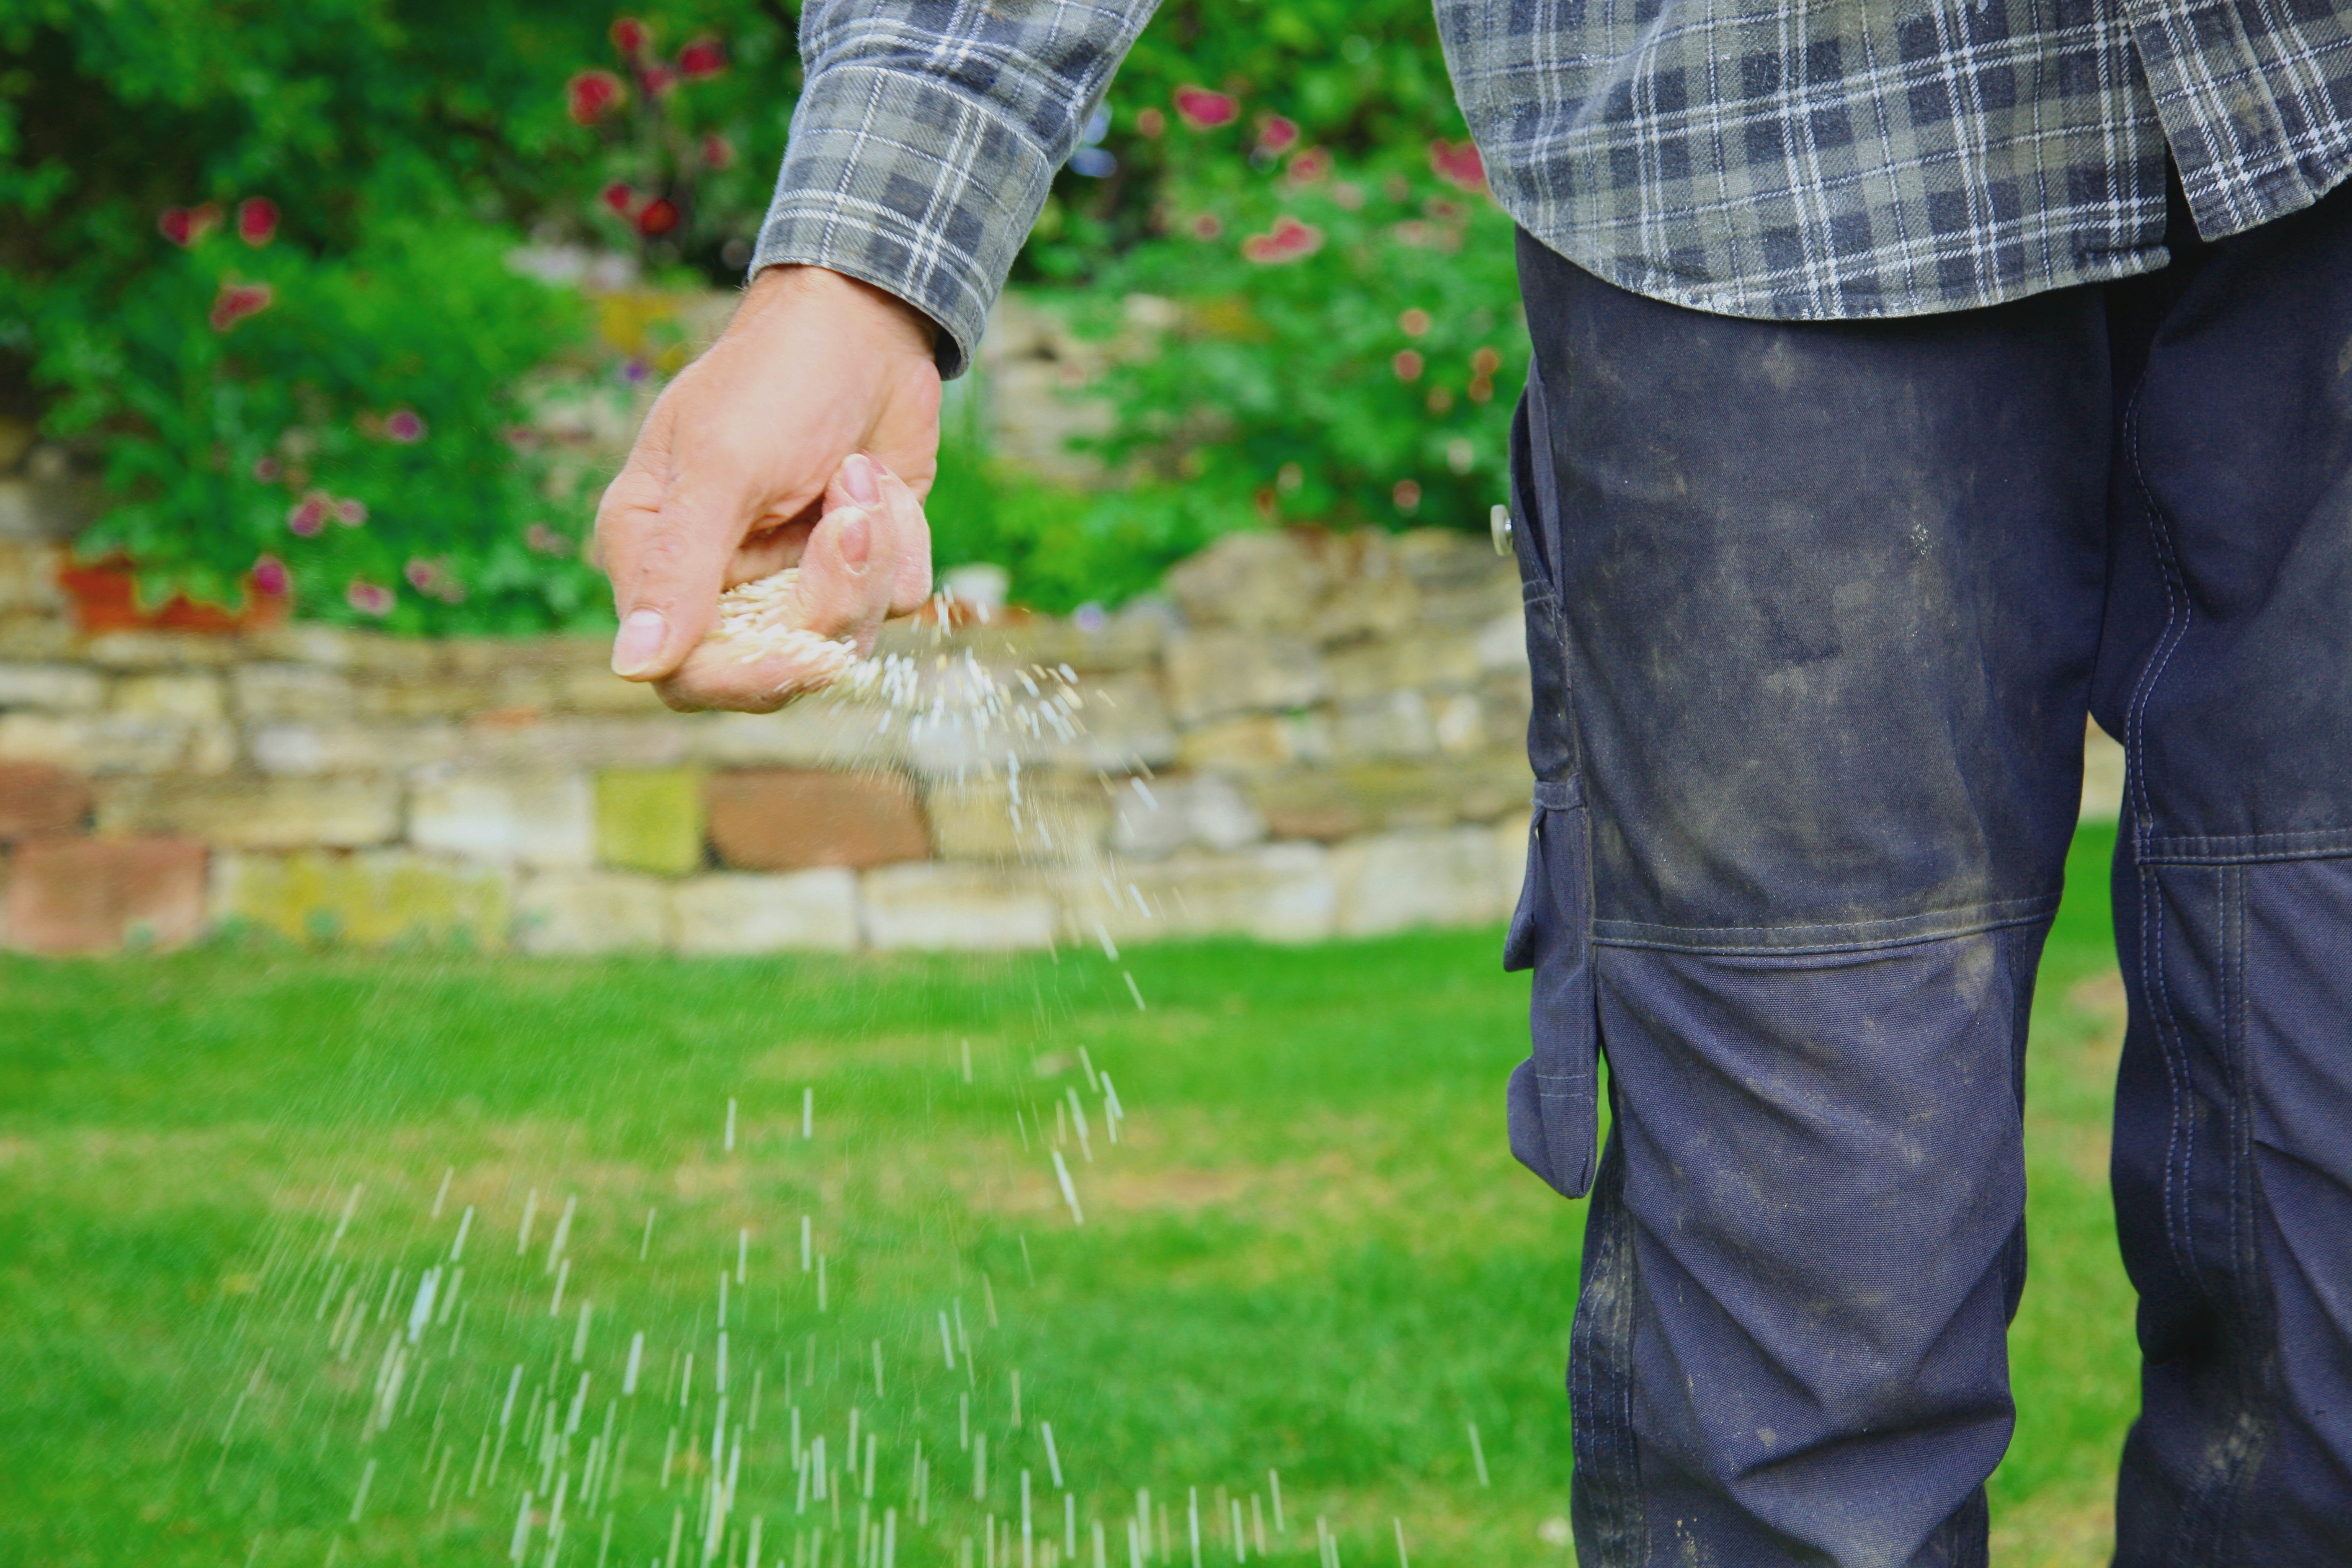 Sans engrais, votre pelouse risque de s’appauvrir, voire de dépérir. Copyright (c) 2020 Mabeline72/Shutterstock.